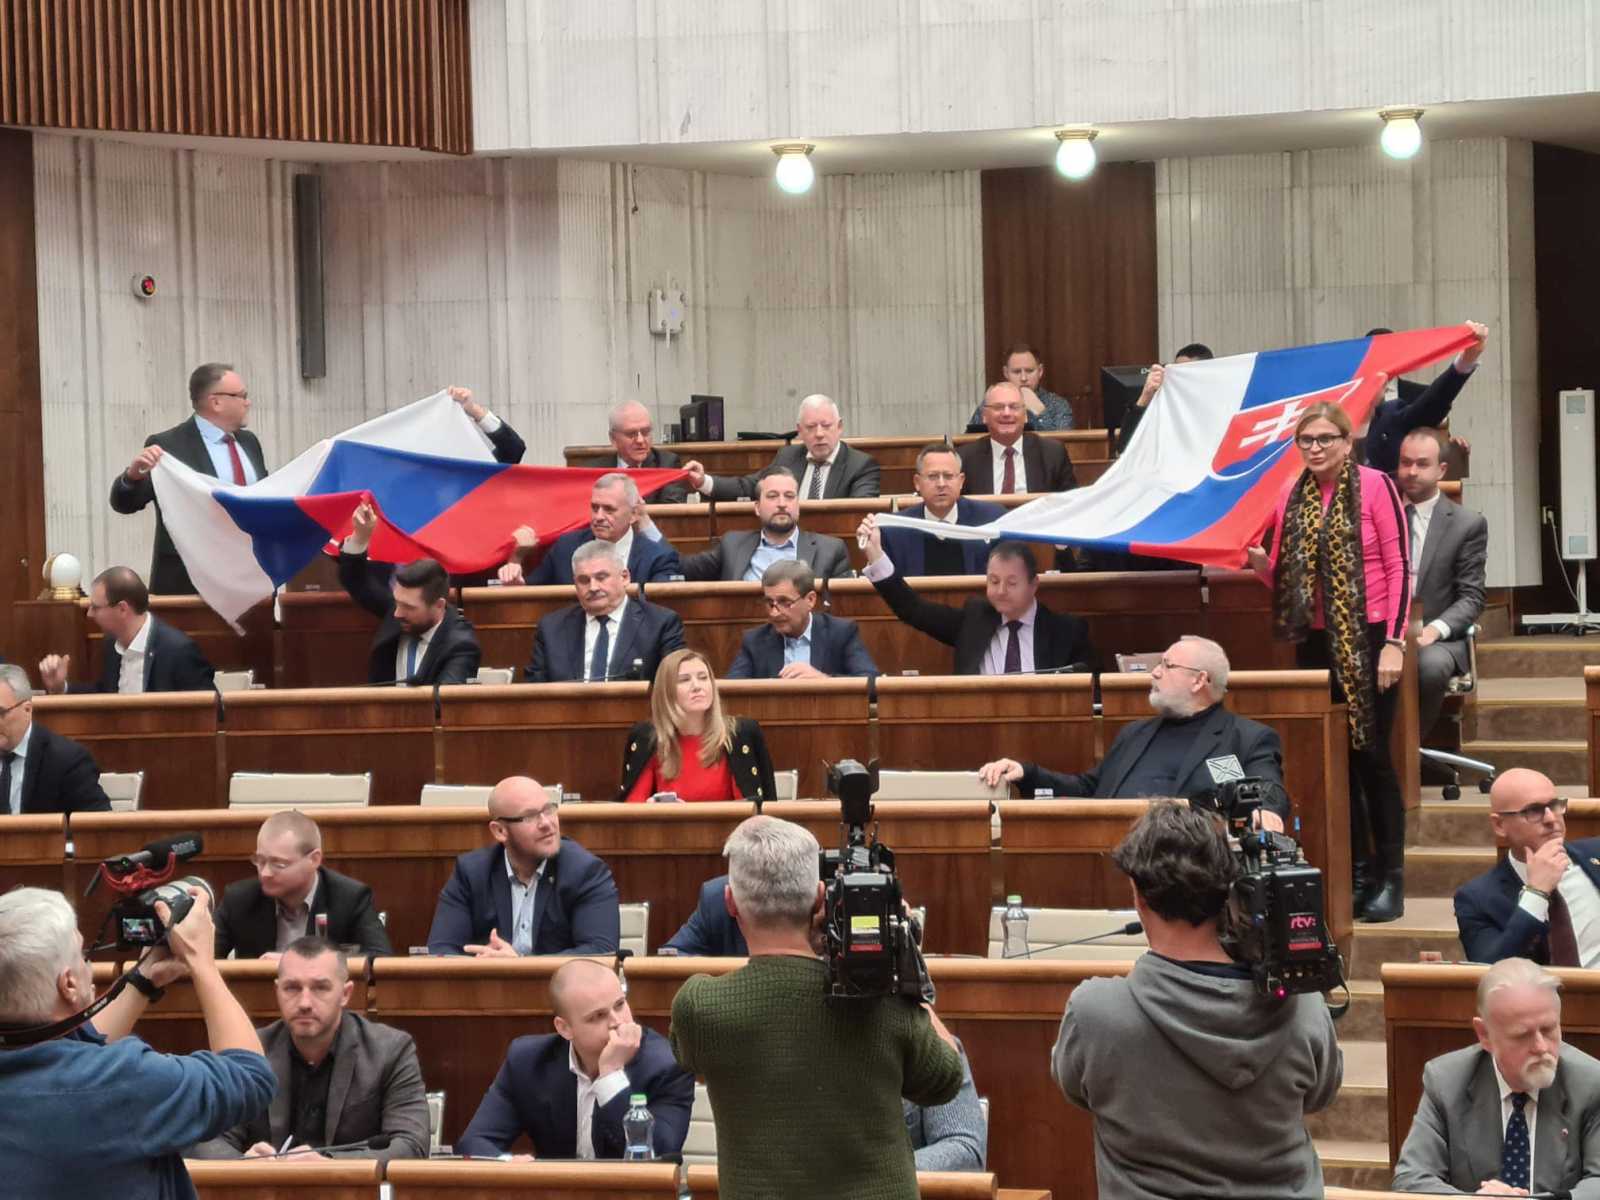 Zászlólengetés a szlovák törvényhozásban Fotó: Robert Fico Facebook oldala